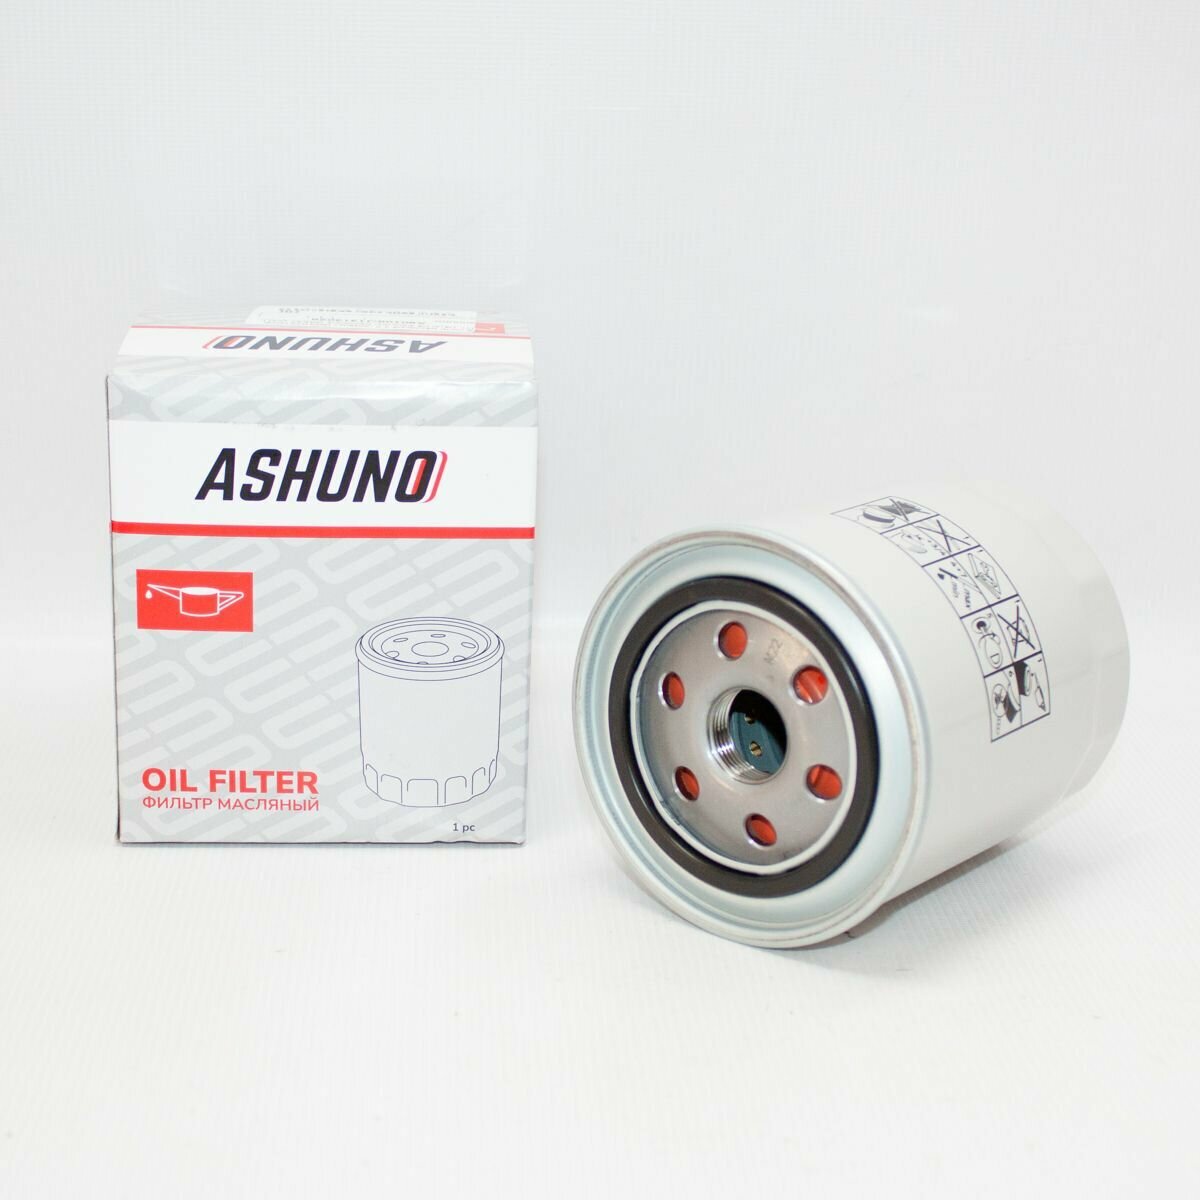 Фильтр масляный ASHUNO для 2.0 (дизель) GW4D20 Hover H5, Haval H5 / Грейт Волл Ховер Хавэйл / J1313028, A90108